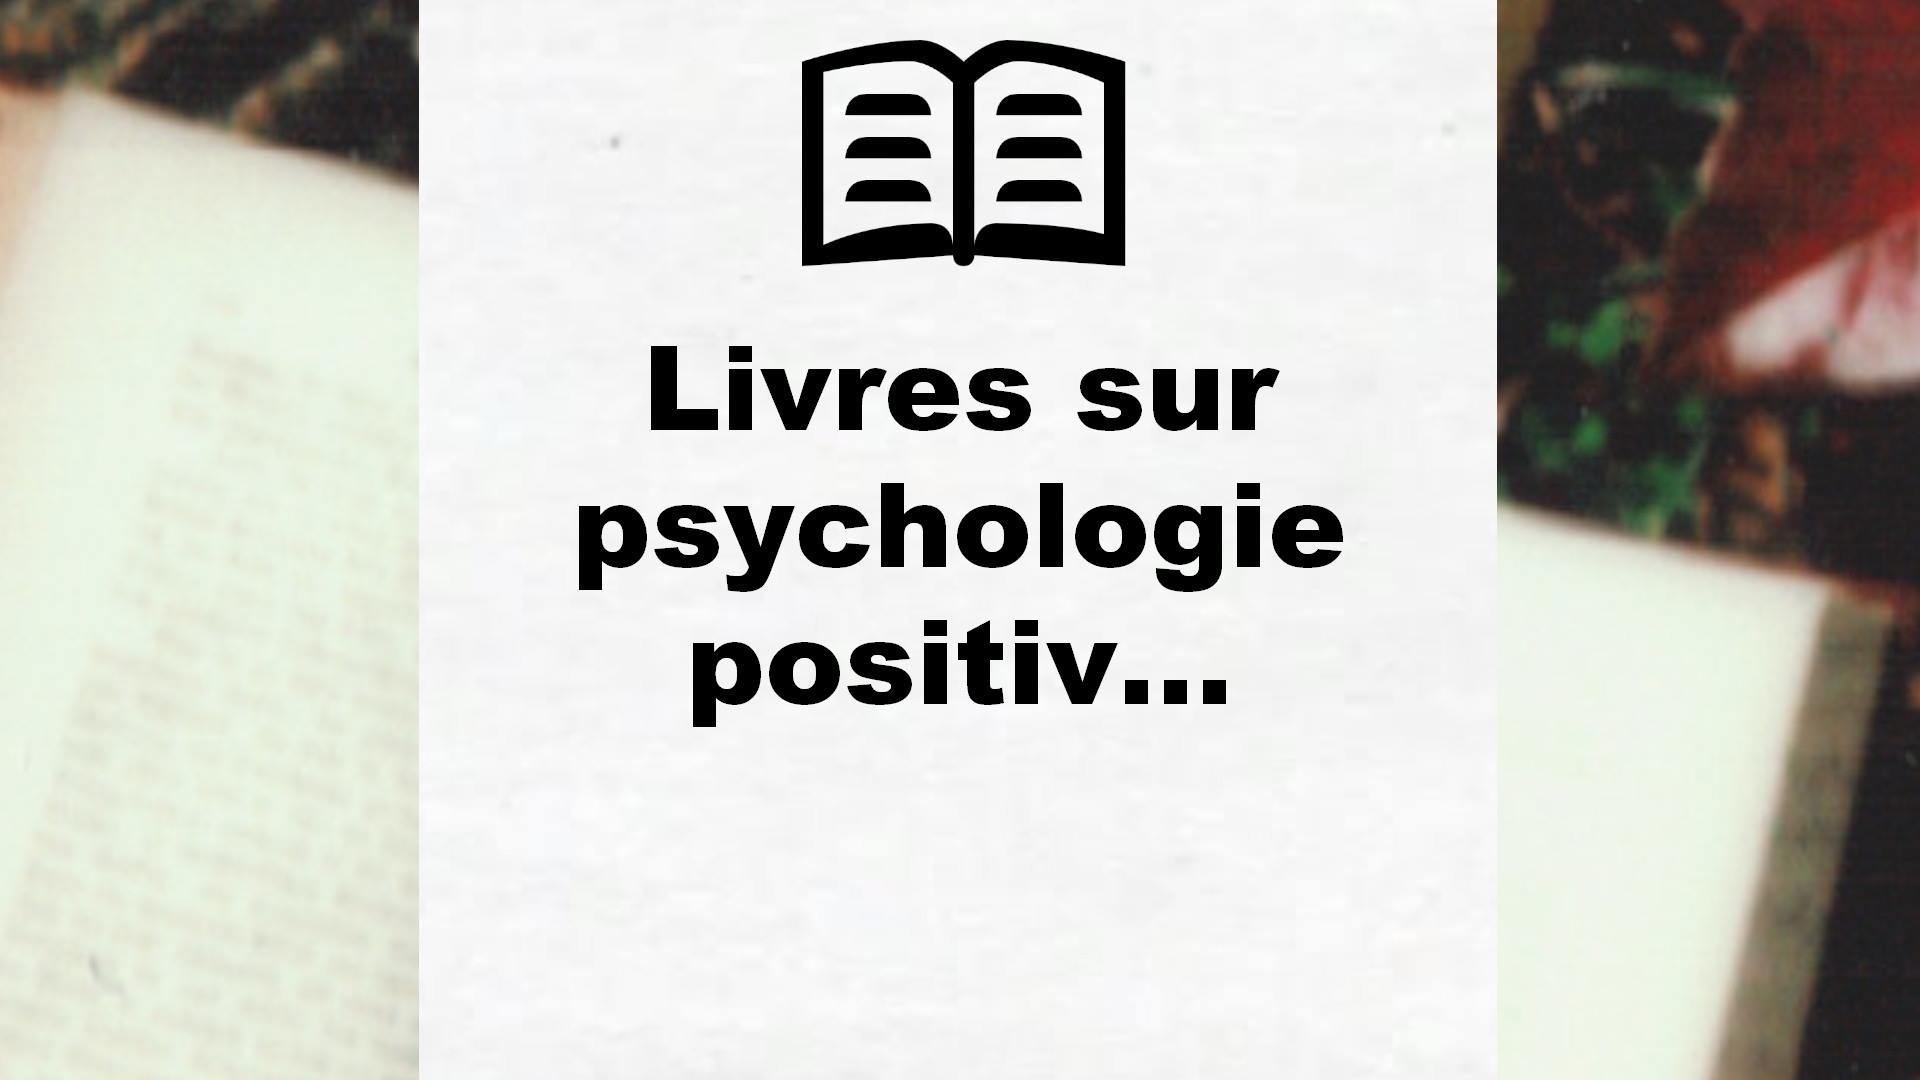 Livres sur psychologie positive